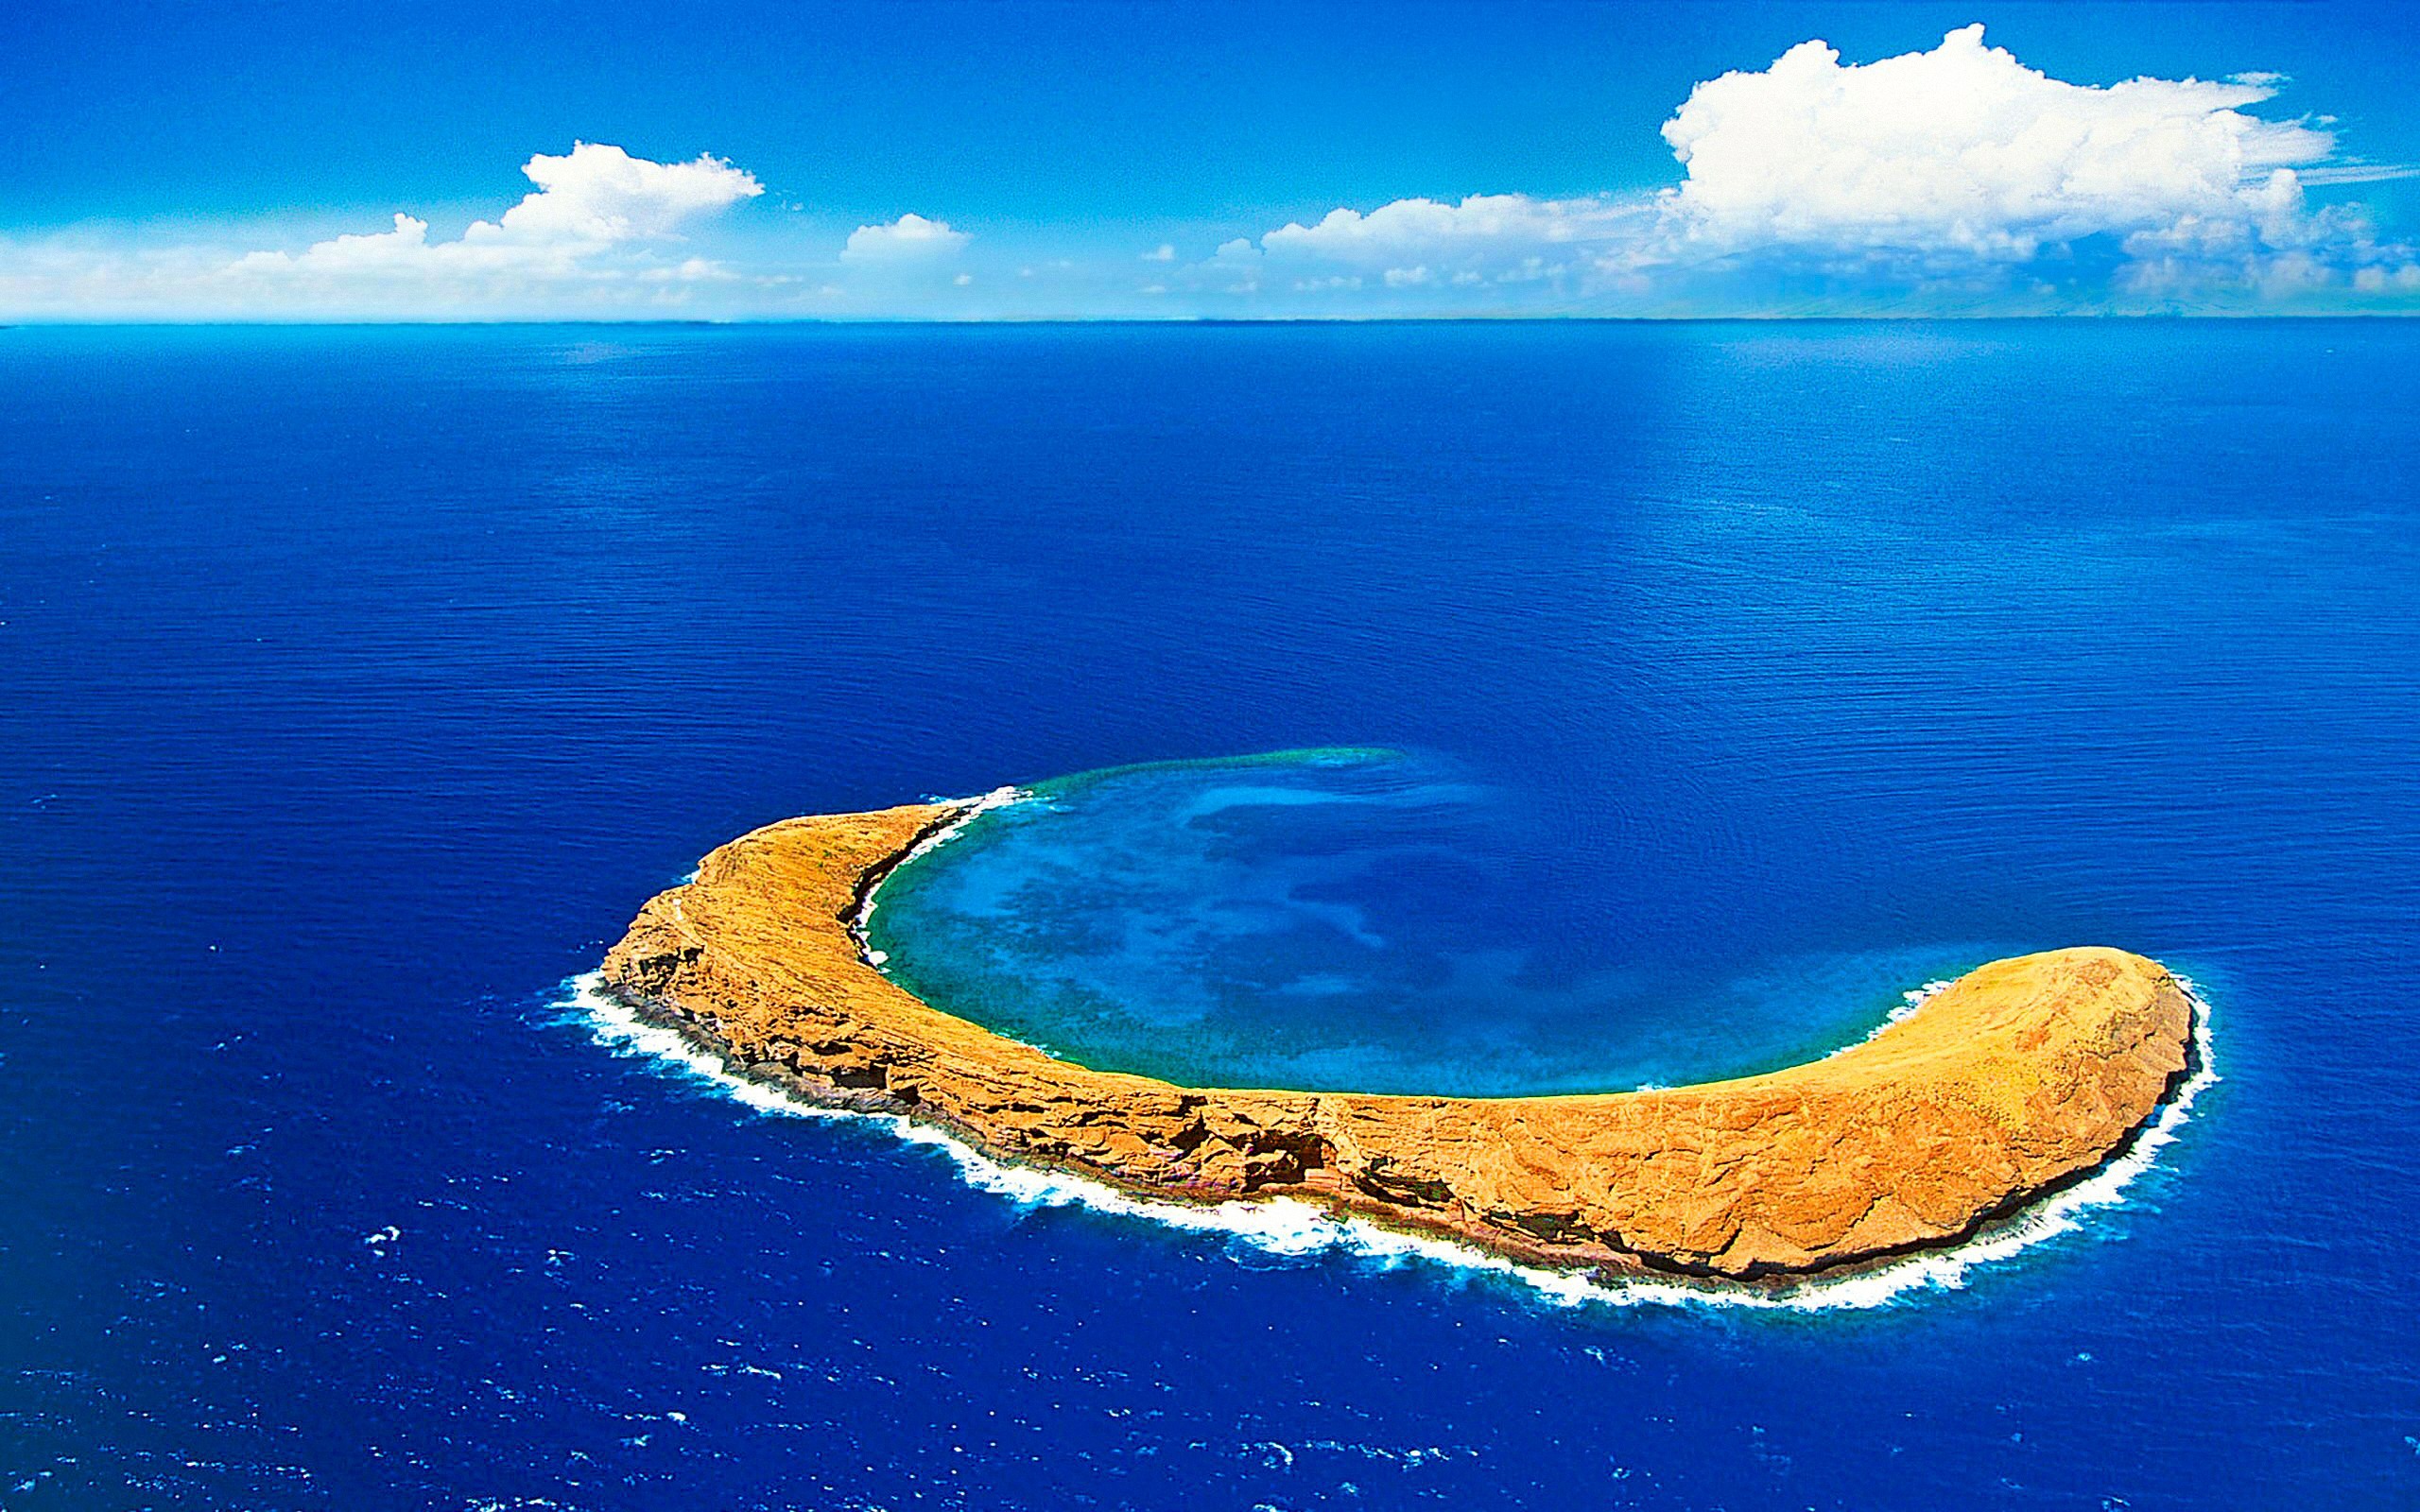 Атлантический океан самый большой остров. Остров Молокини, Гавайи. Кратер Молокини, Гавайи. Атолл Рокас Бразилия. Азорские острова.